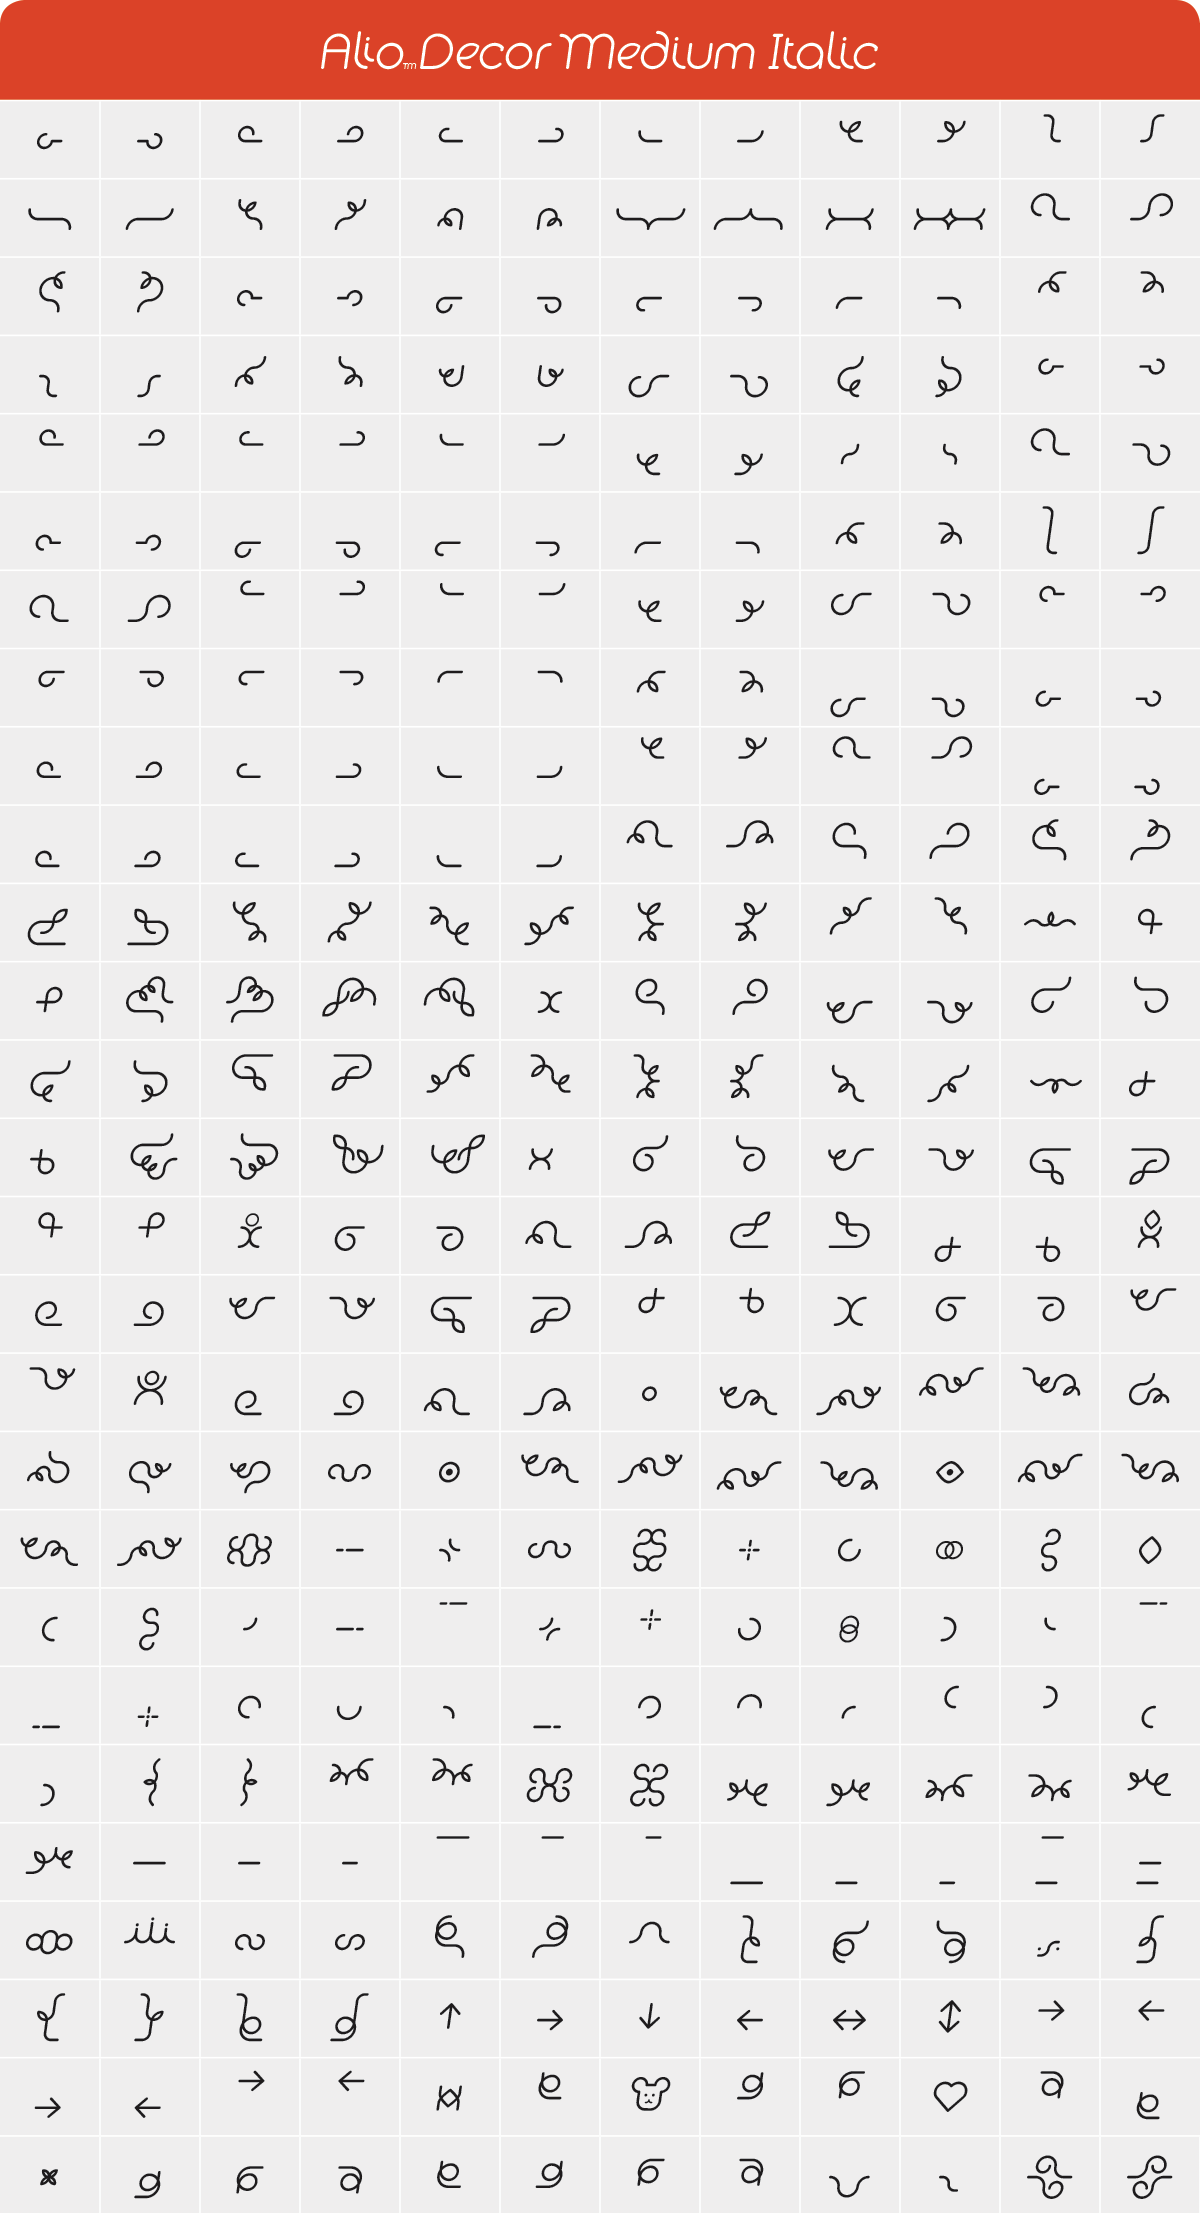 Alio Decor Medium Italic Glyph Set